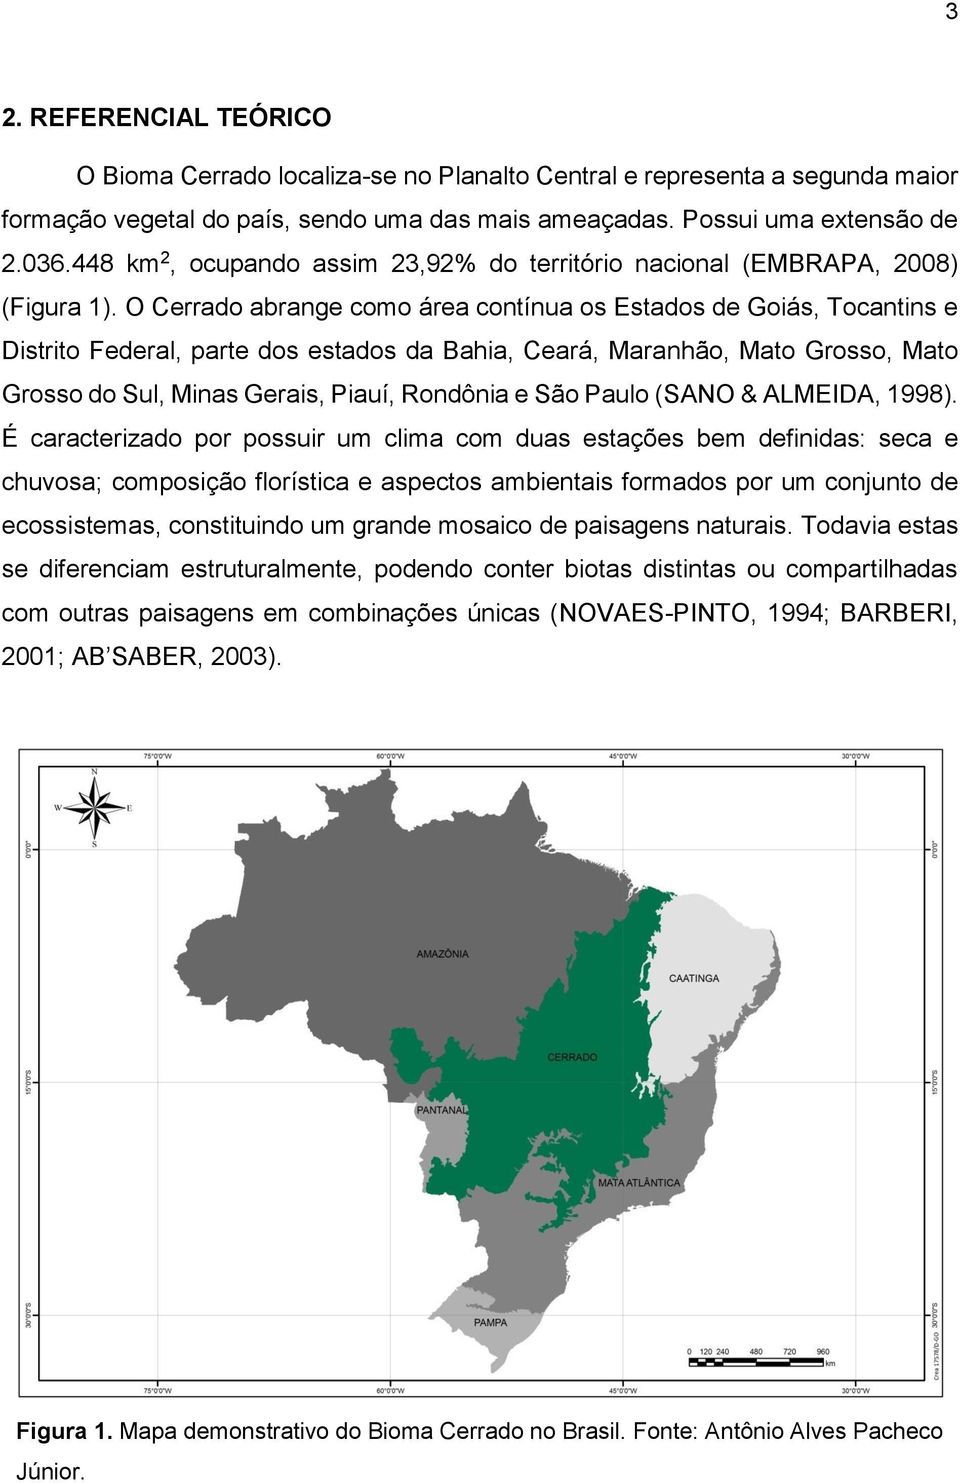 O Cerrado abrange como área contínua os Estados de Goiás, Tocantins e Distrito Federal, parte dos estados da Bahia, Ceará, Maranhão, Mato Grosso, Mato Grosso do Sul, Minas Gerais, Piauí, Rondônia e